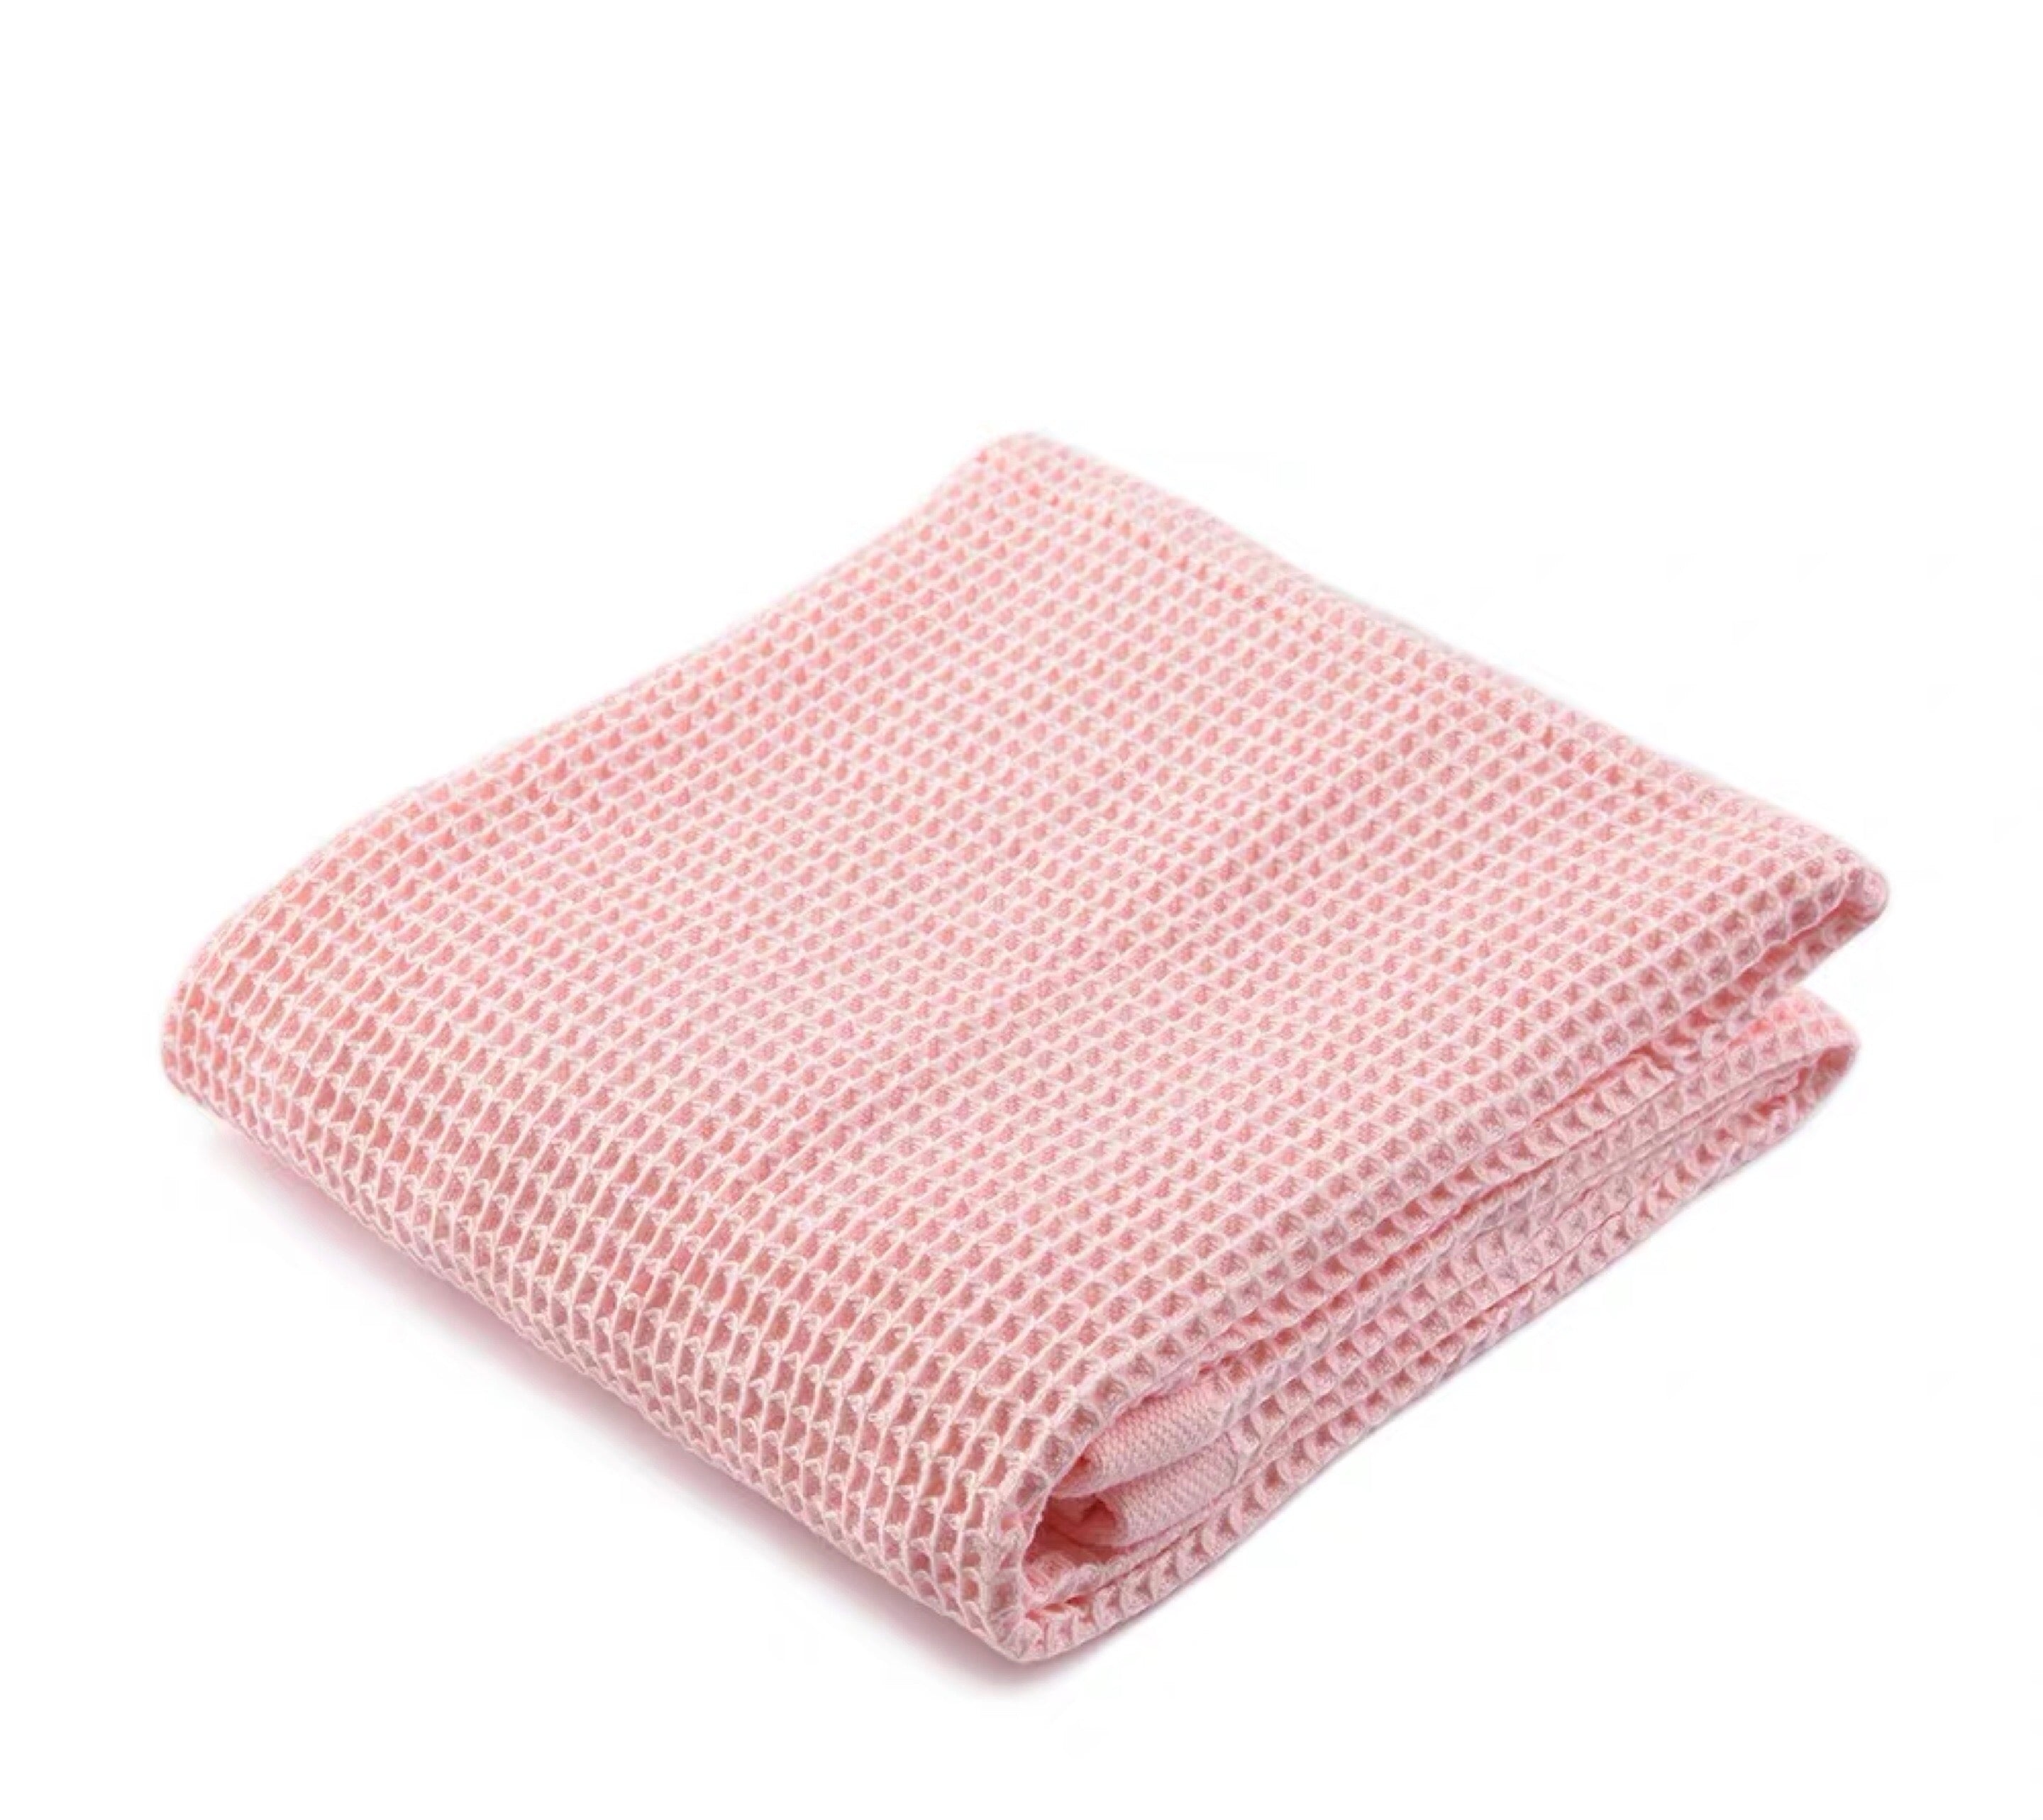 Waffle Bath Towel in Blush by PROSE Décor